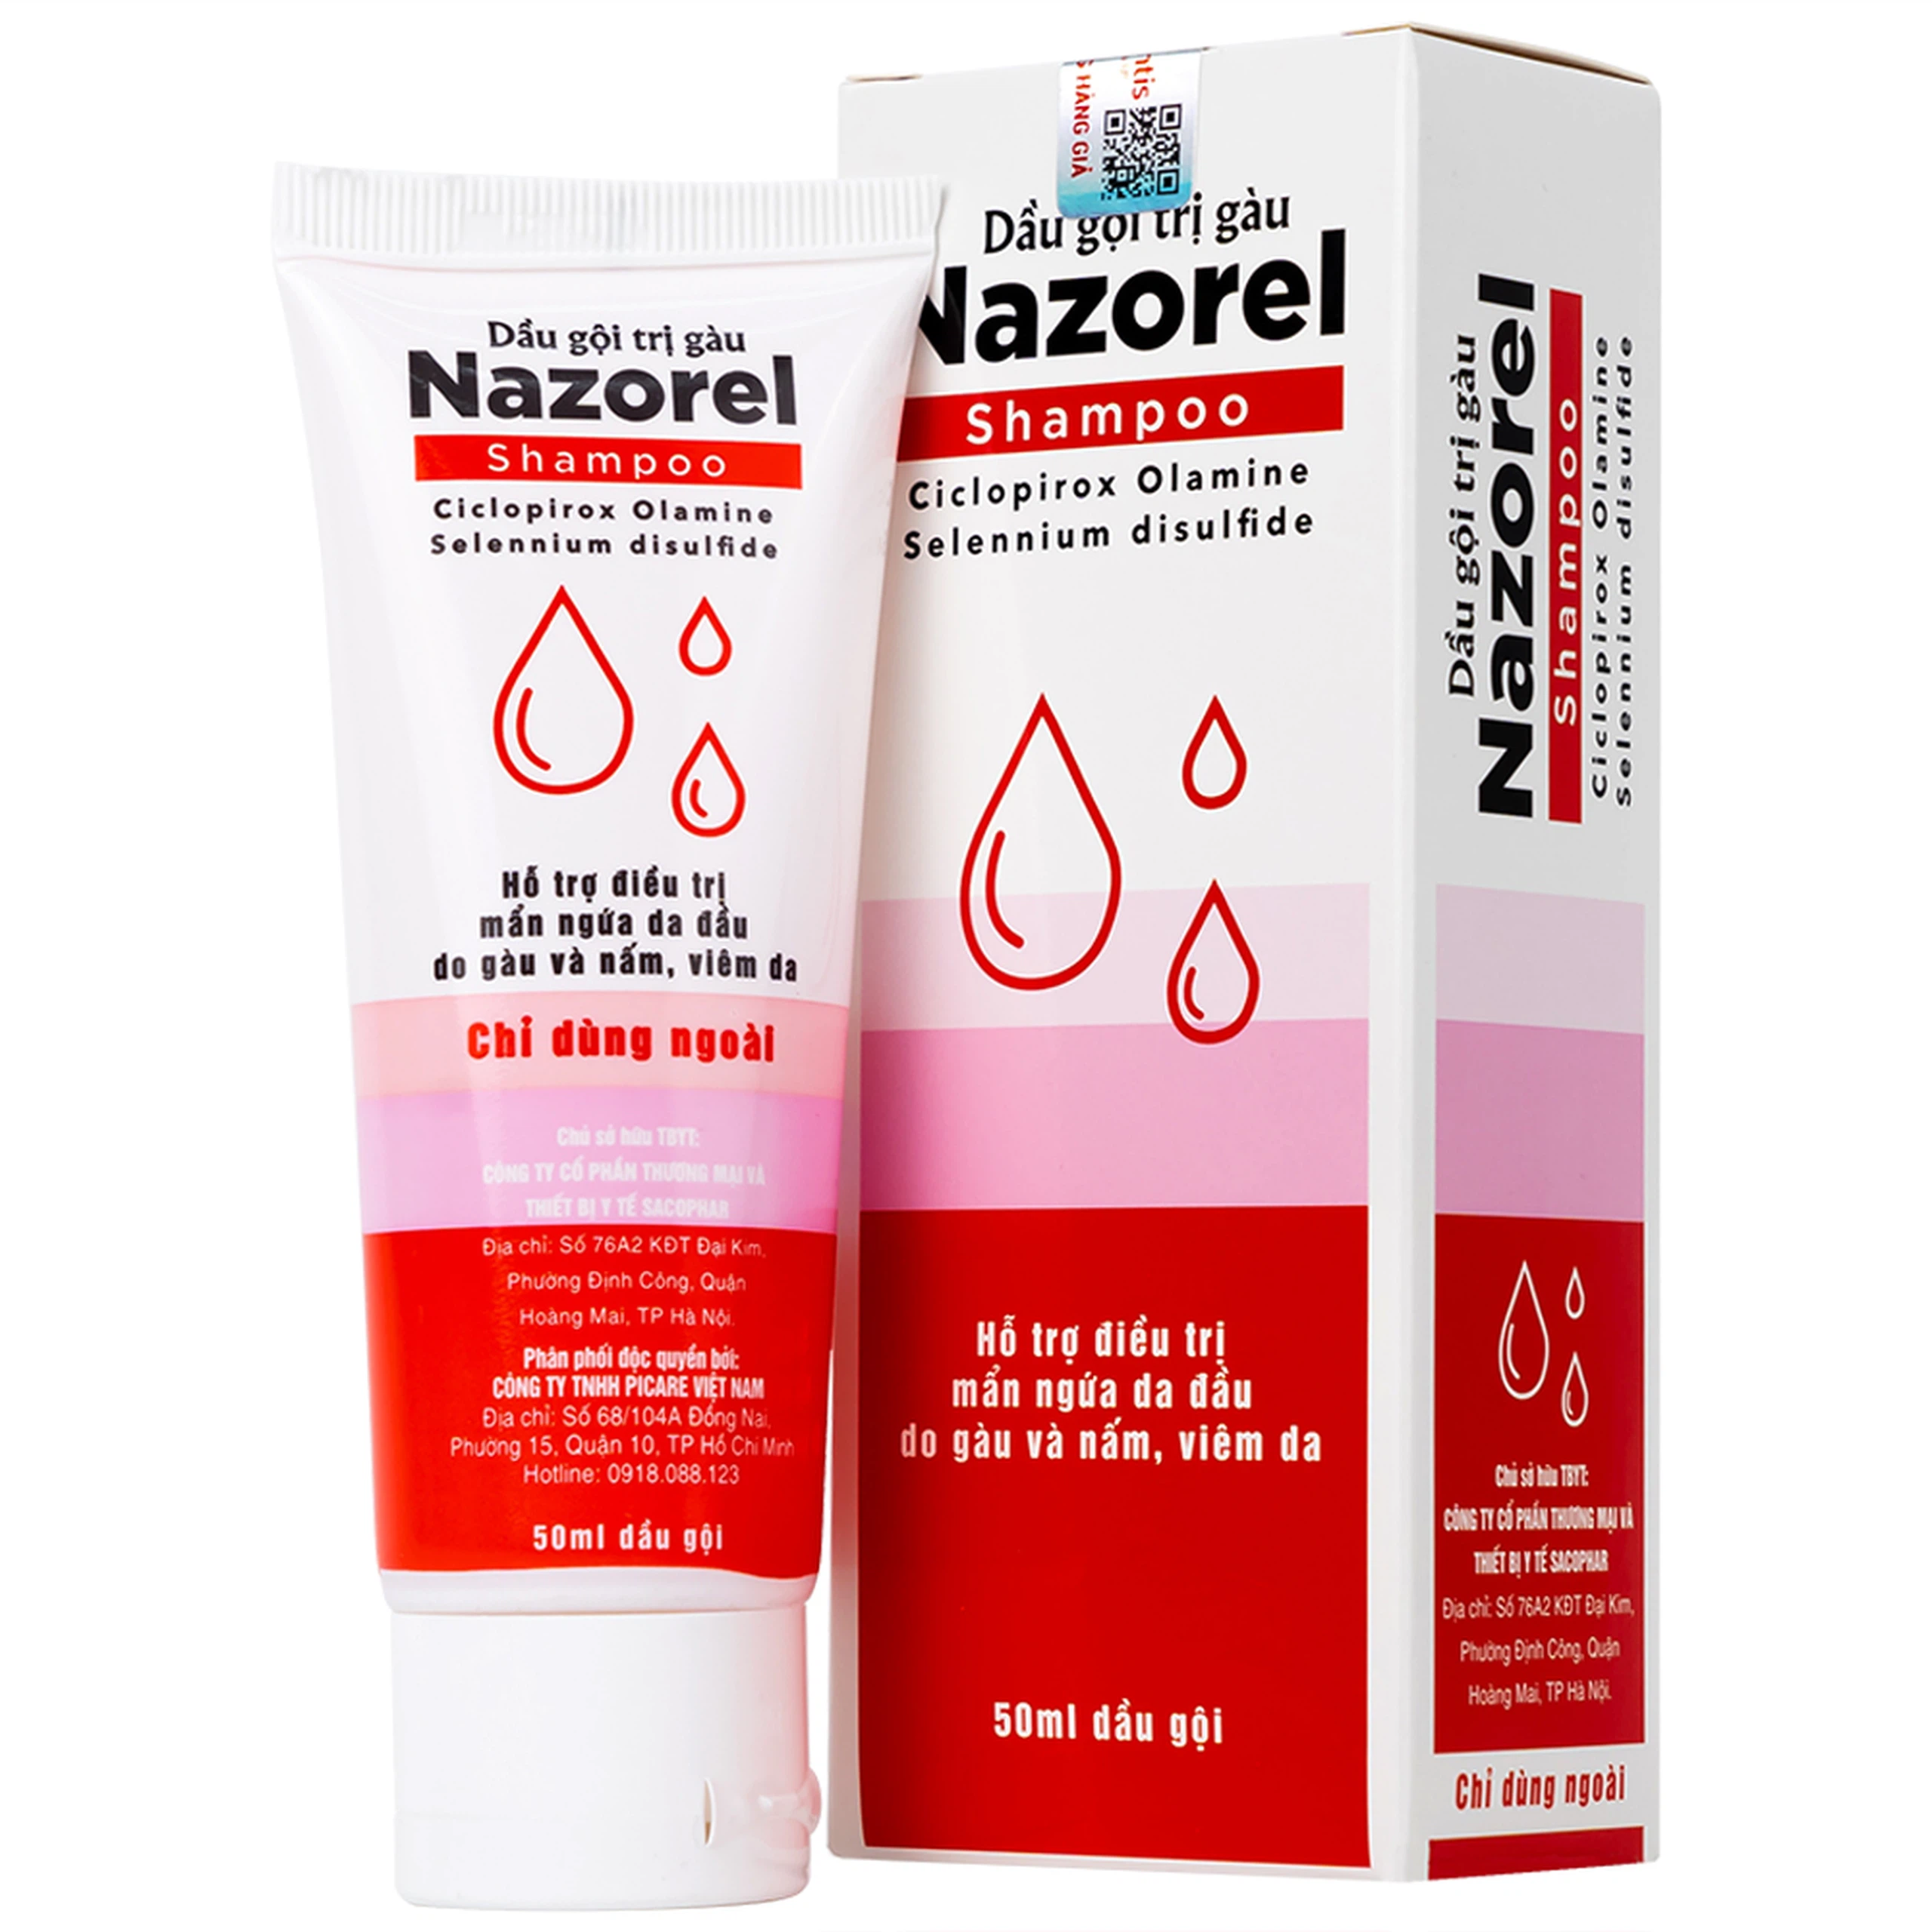 Dầu gội trị gàu Nazorel hỗ trợ điều trị mẩn ngứa da đầu do gàu và nấm, viêm da (50ml)